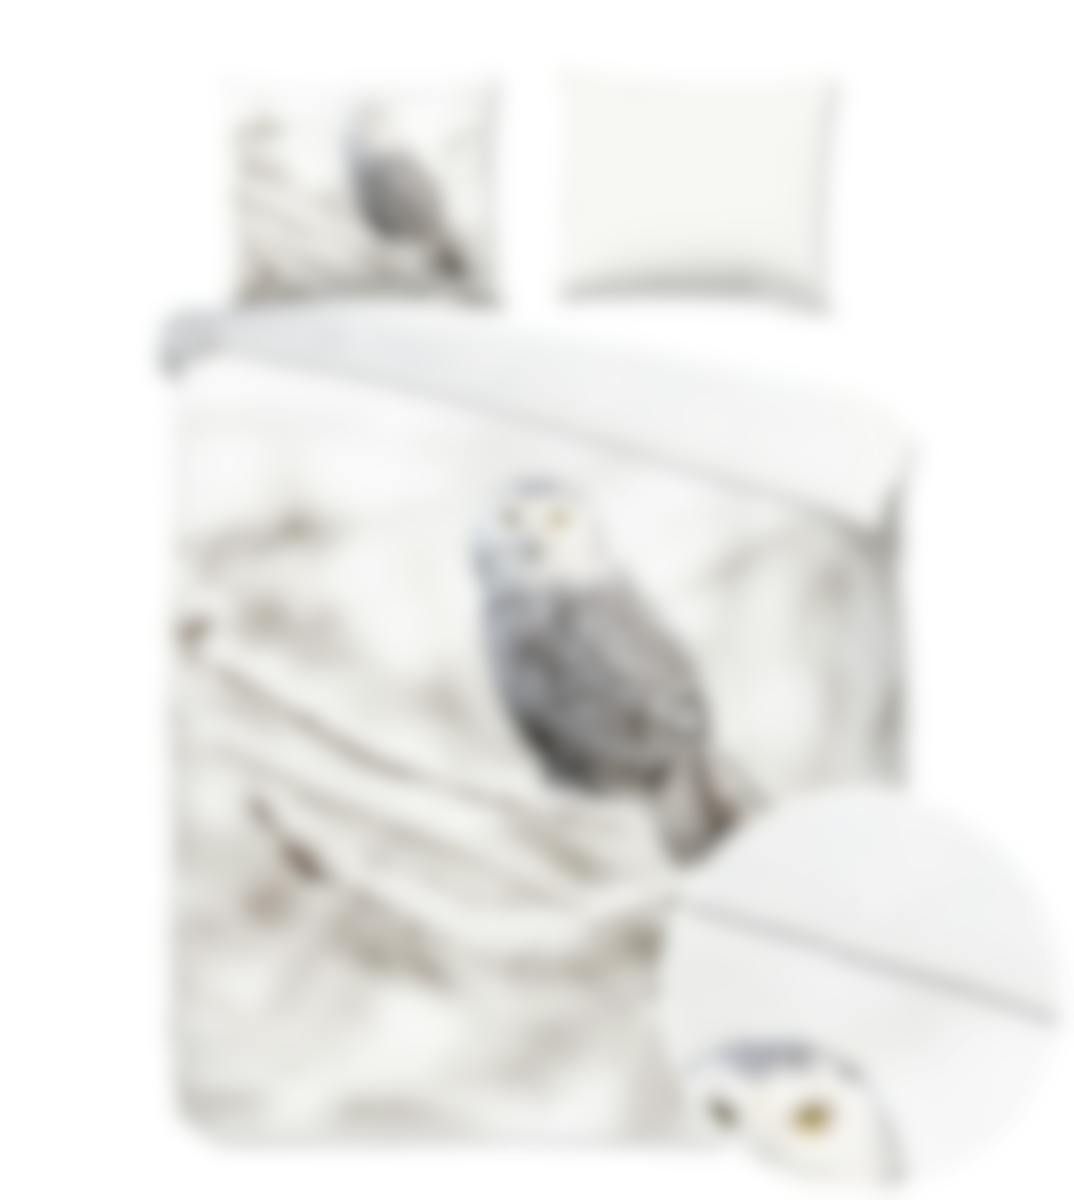 Good Morning dekbedovertrek Snowy Owl White Flanel 200 x 200-220 cm